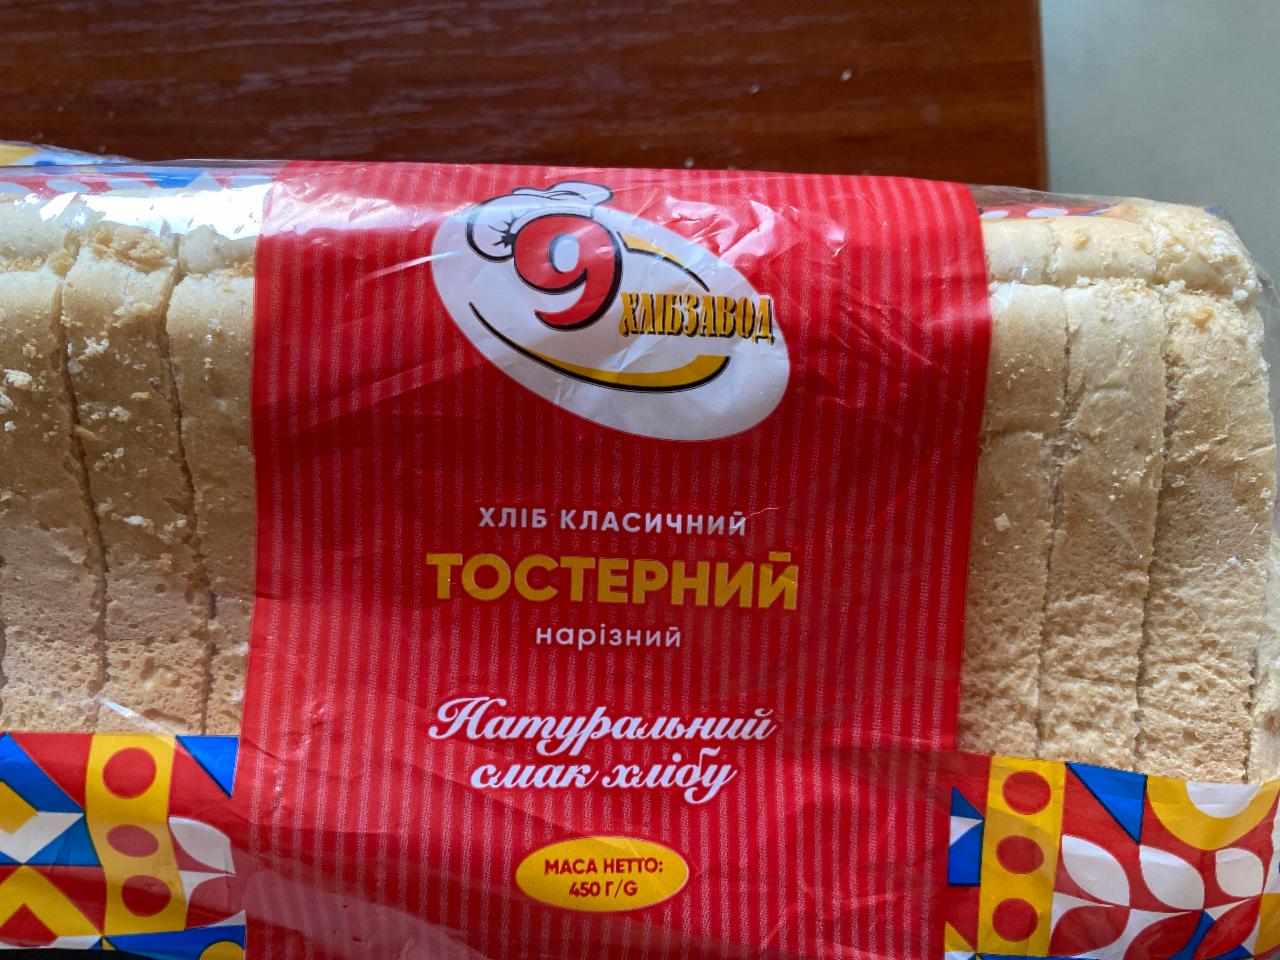 Фото - Хлеб классический тостерный нарезной 9 хлебозавод